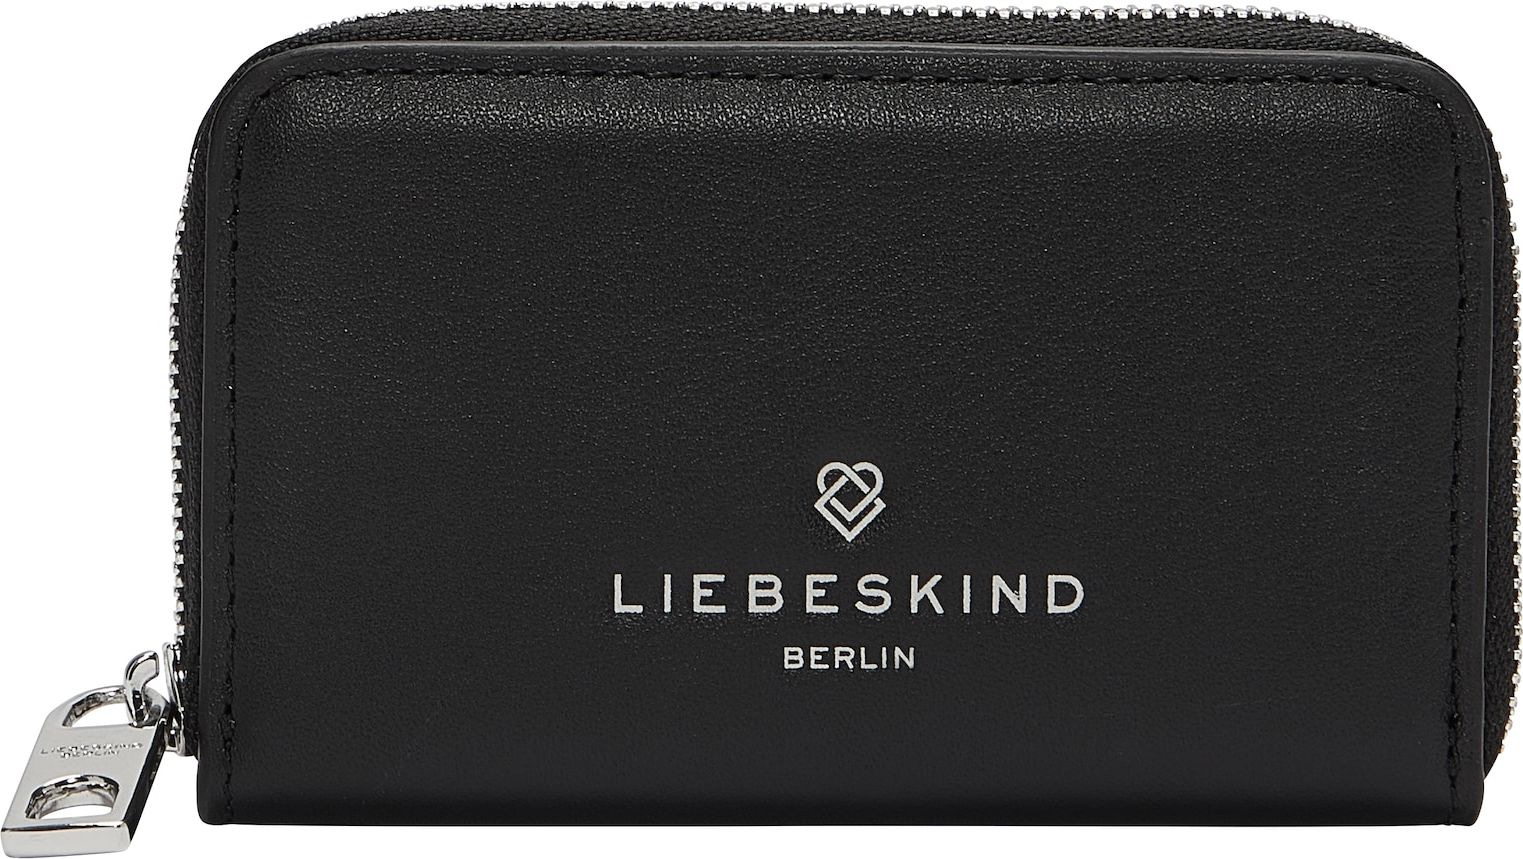 Liebeskind Berlin Peněženka černá / bílá